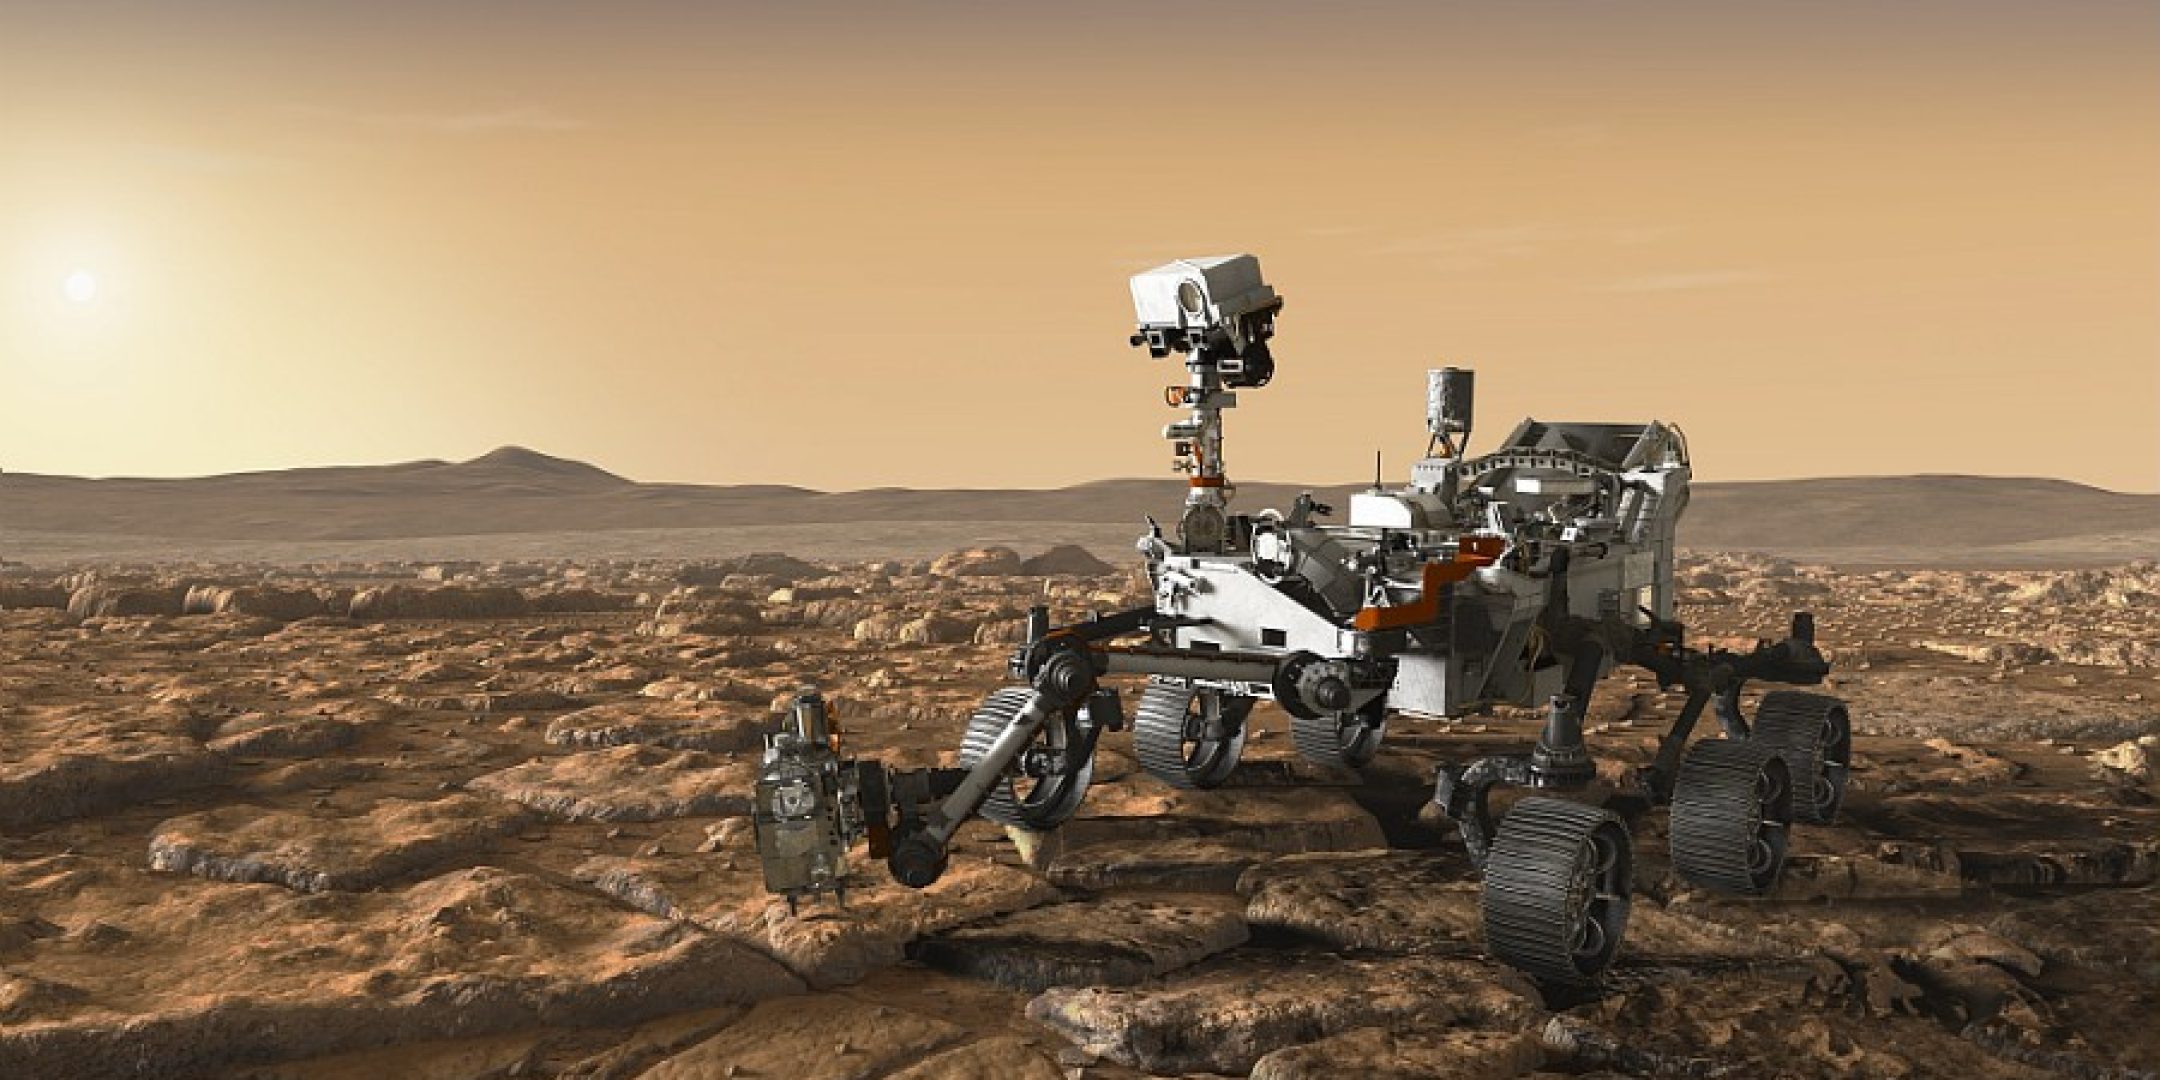 Illustration du rover Mars 2020, mission d'exploration de la planete Mars developpee par le centre JPL de la NASA.
La mission Mars 2020 est une mission dexploration robotique de la NASA qui sera lancee en juillet 2020. Elle deposera a la surface de la planete rouge un vehicule afin de decouvrir des traces dune vie passee, si elle a existe, et de preparer des echantillons qui pourront, un jour, etre rapportes sur Terre. 
La NASA sappuie sur le Caltech/JPL pour le developpement de cette mission qui emporte sept instruments dont SuperCam.

Supercam etudiera la chimie et la mineralogie des roches et des sols de Mars. Le CNES est responsable de la contribution francaise a SuperCam.